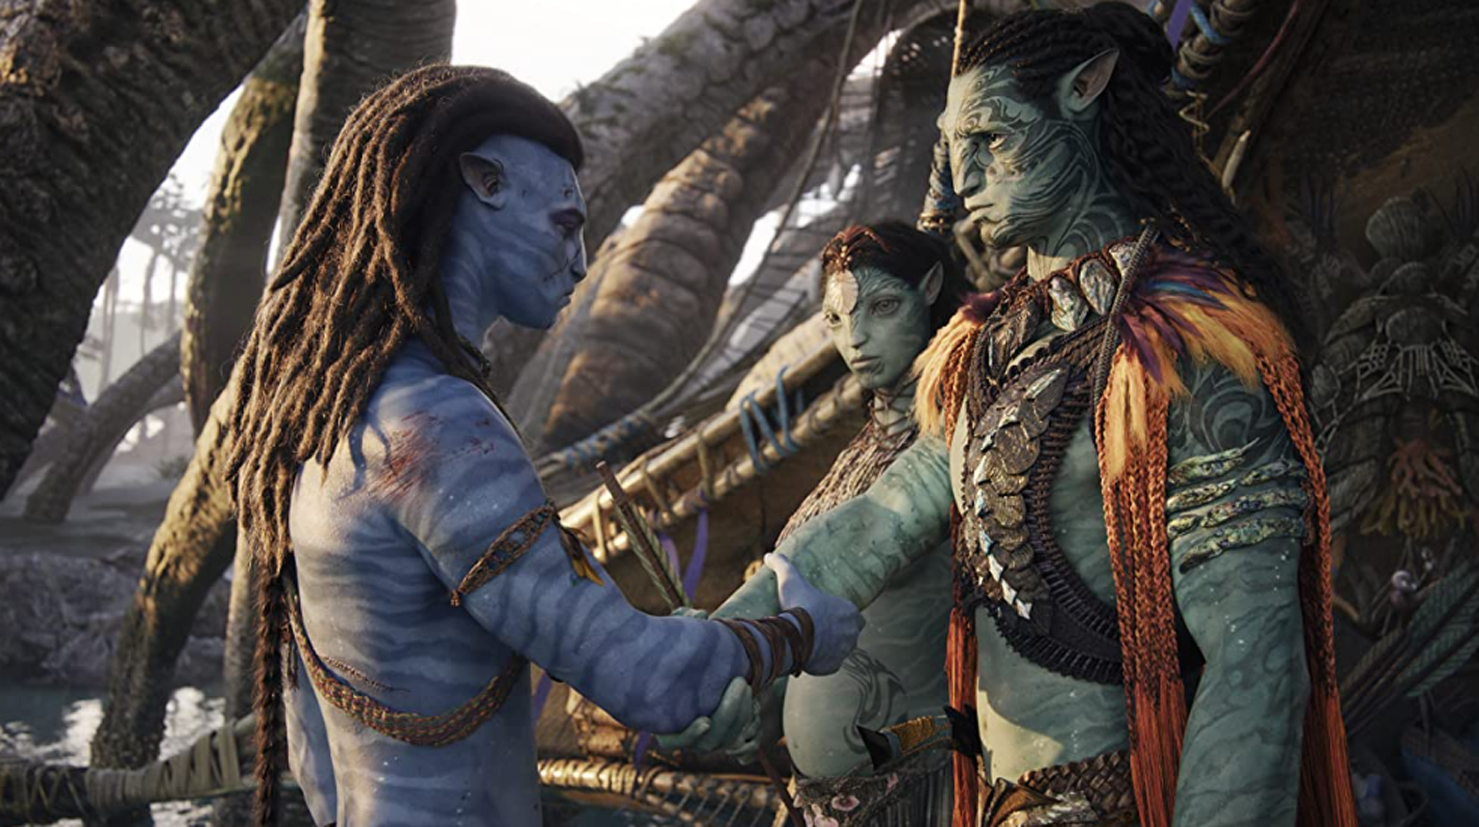 Review phim Avatar 2 Dòng Chảy Của Nước  Tuyệt tác làm thỏa mãn thị giác   Khen Phim